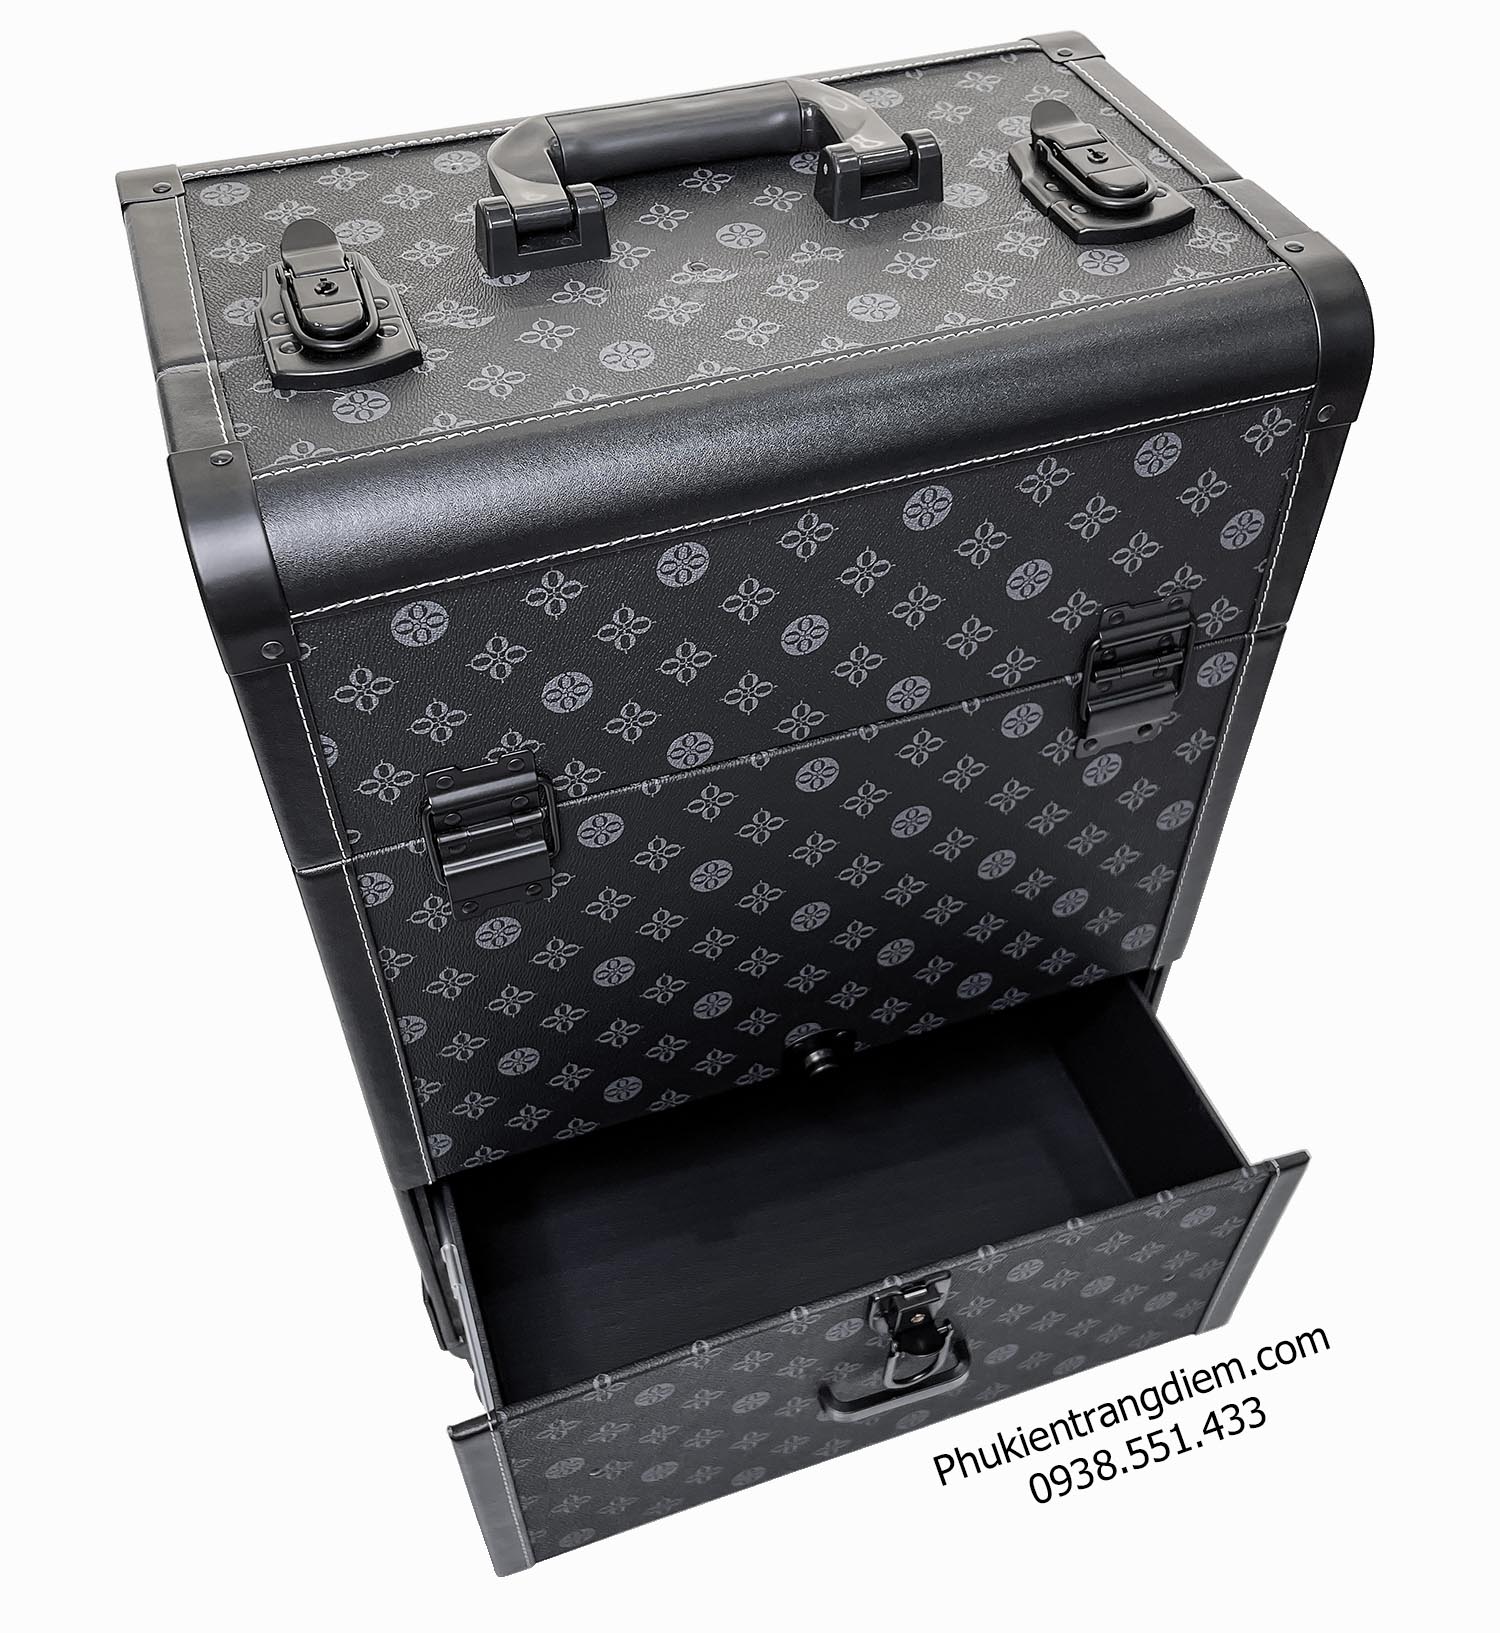 vali cốp kéo đựng đồ trang điểm chuyên nghiệp nhiều ngăn có tay kéo + bánh xe